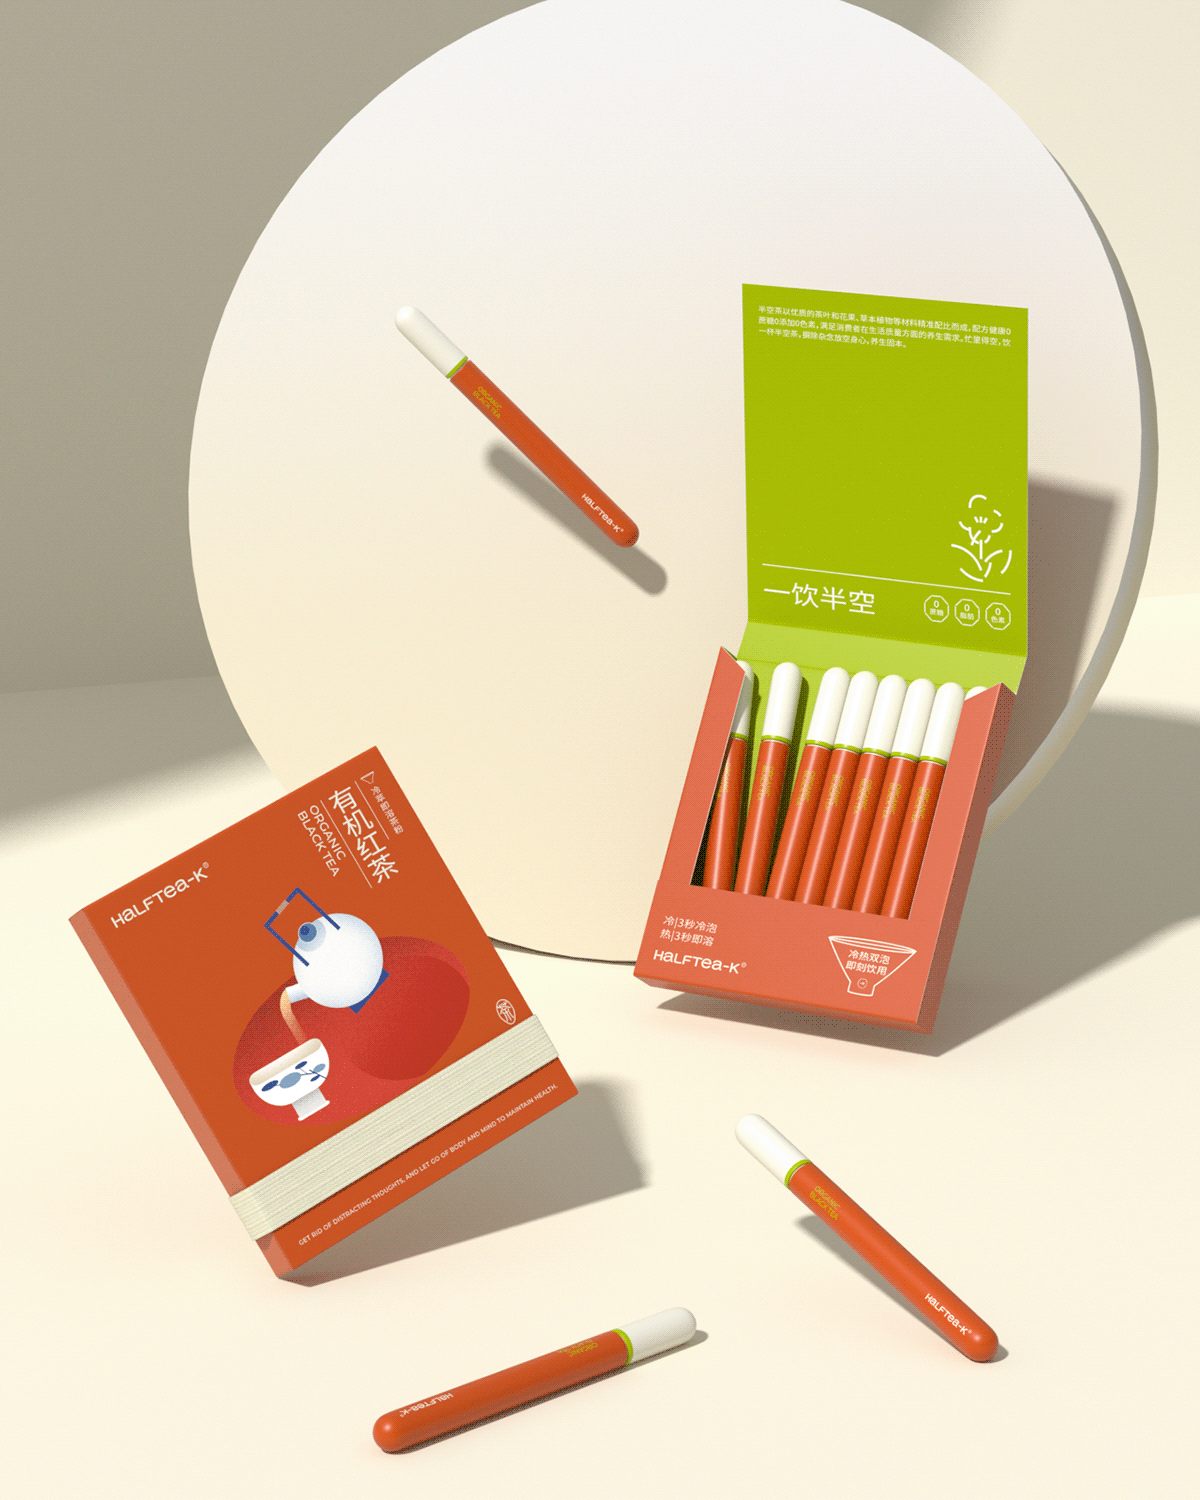 Packaging 包装 包装设计 品牌设计 图形设计 平面设计 视觉设计